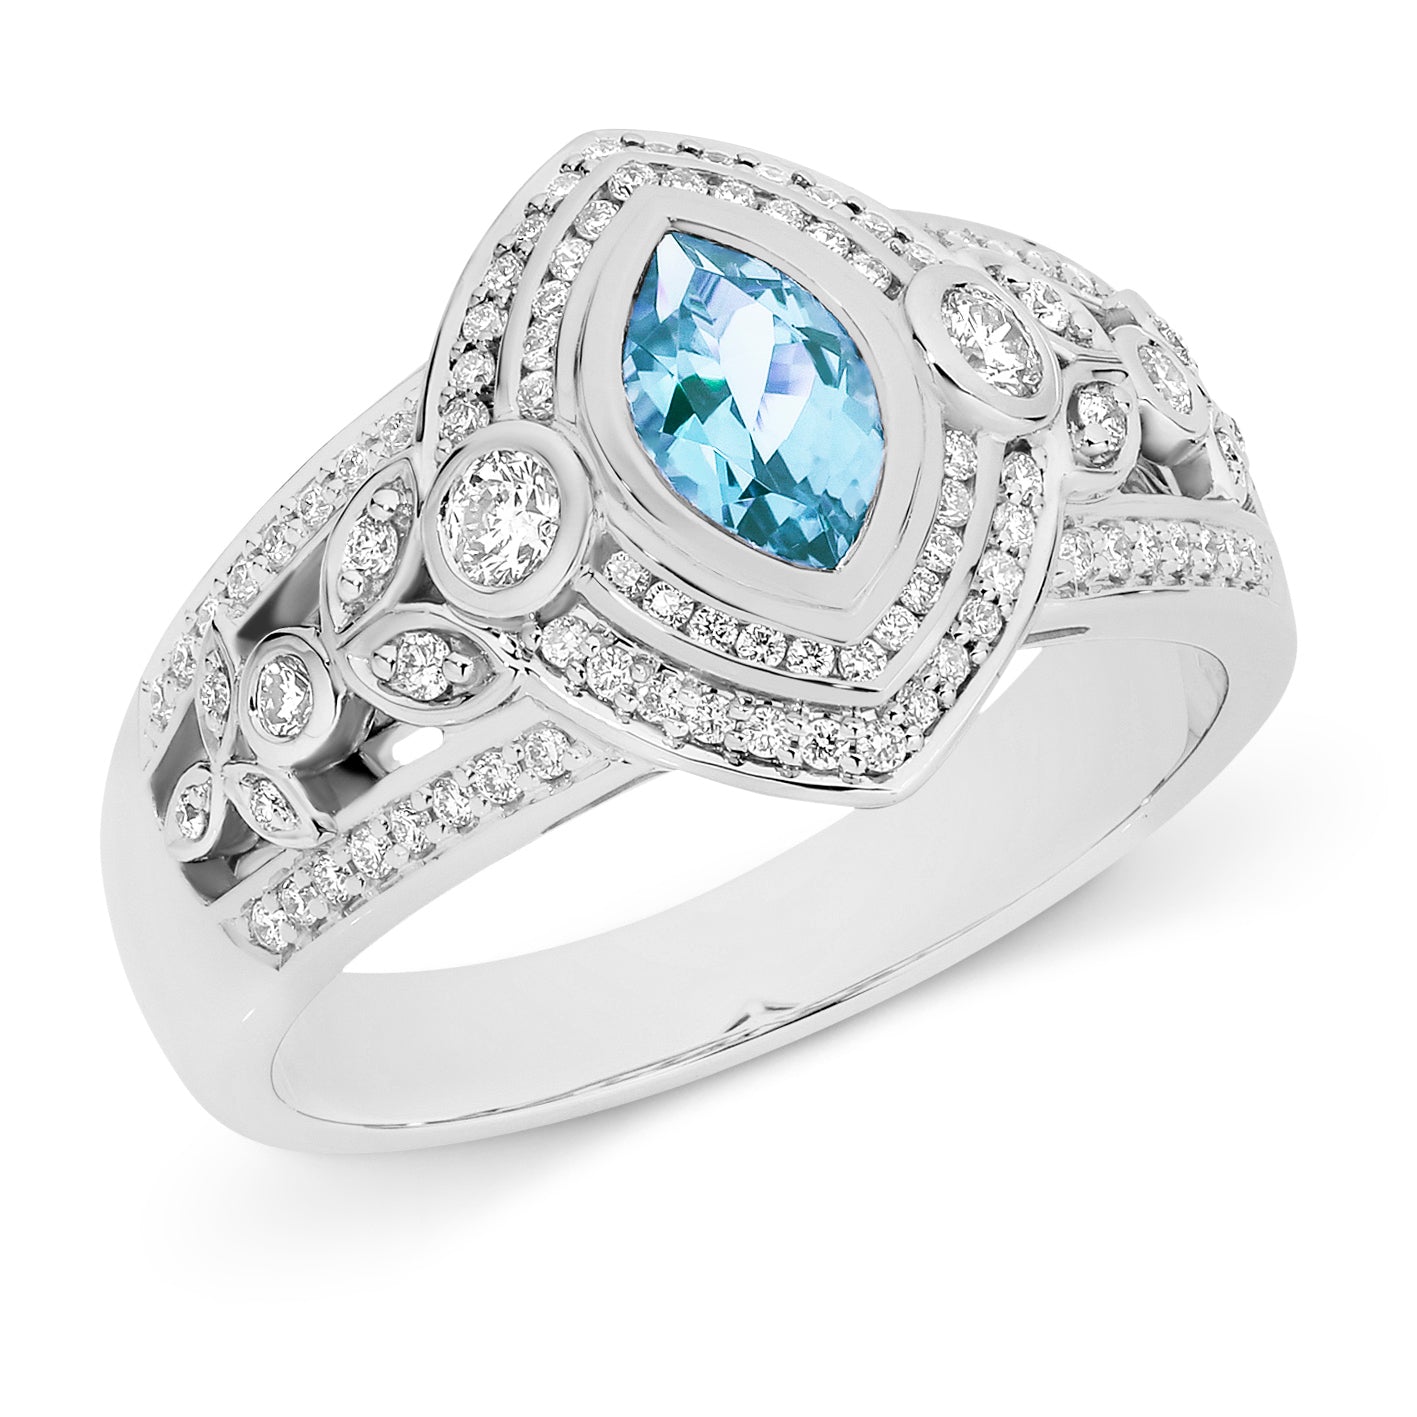 Celeste' Aquamarine & Diamond Ring in 18ct White Gold